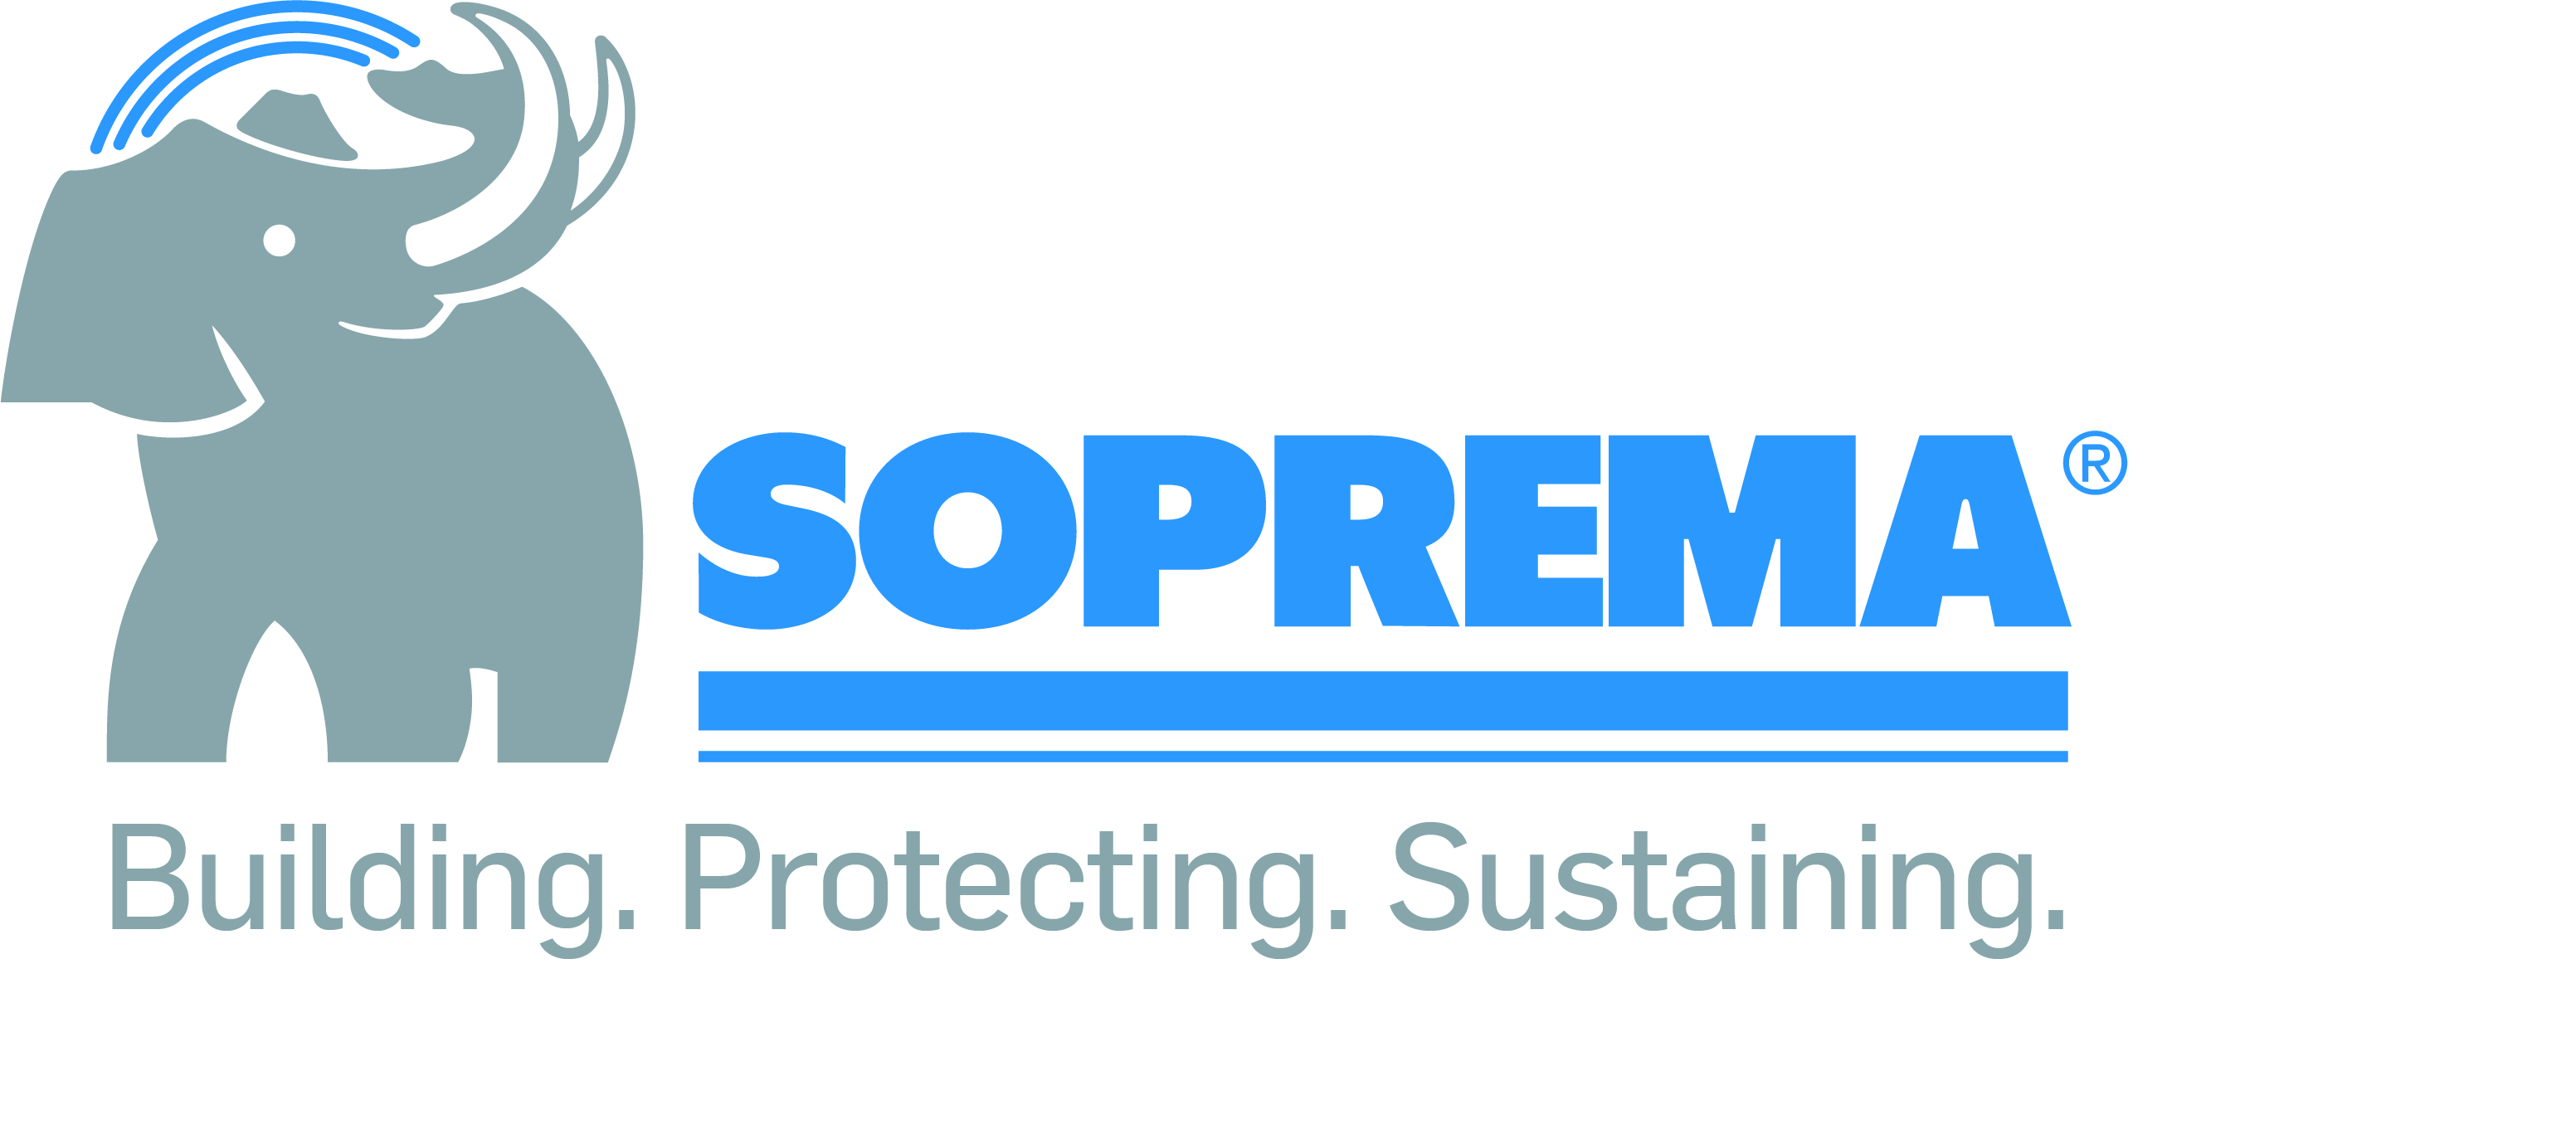 Soprema_logo_Building. Protecting. Sustaining.jpg